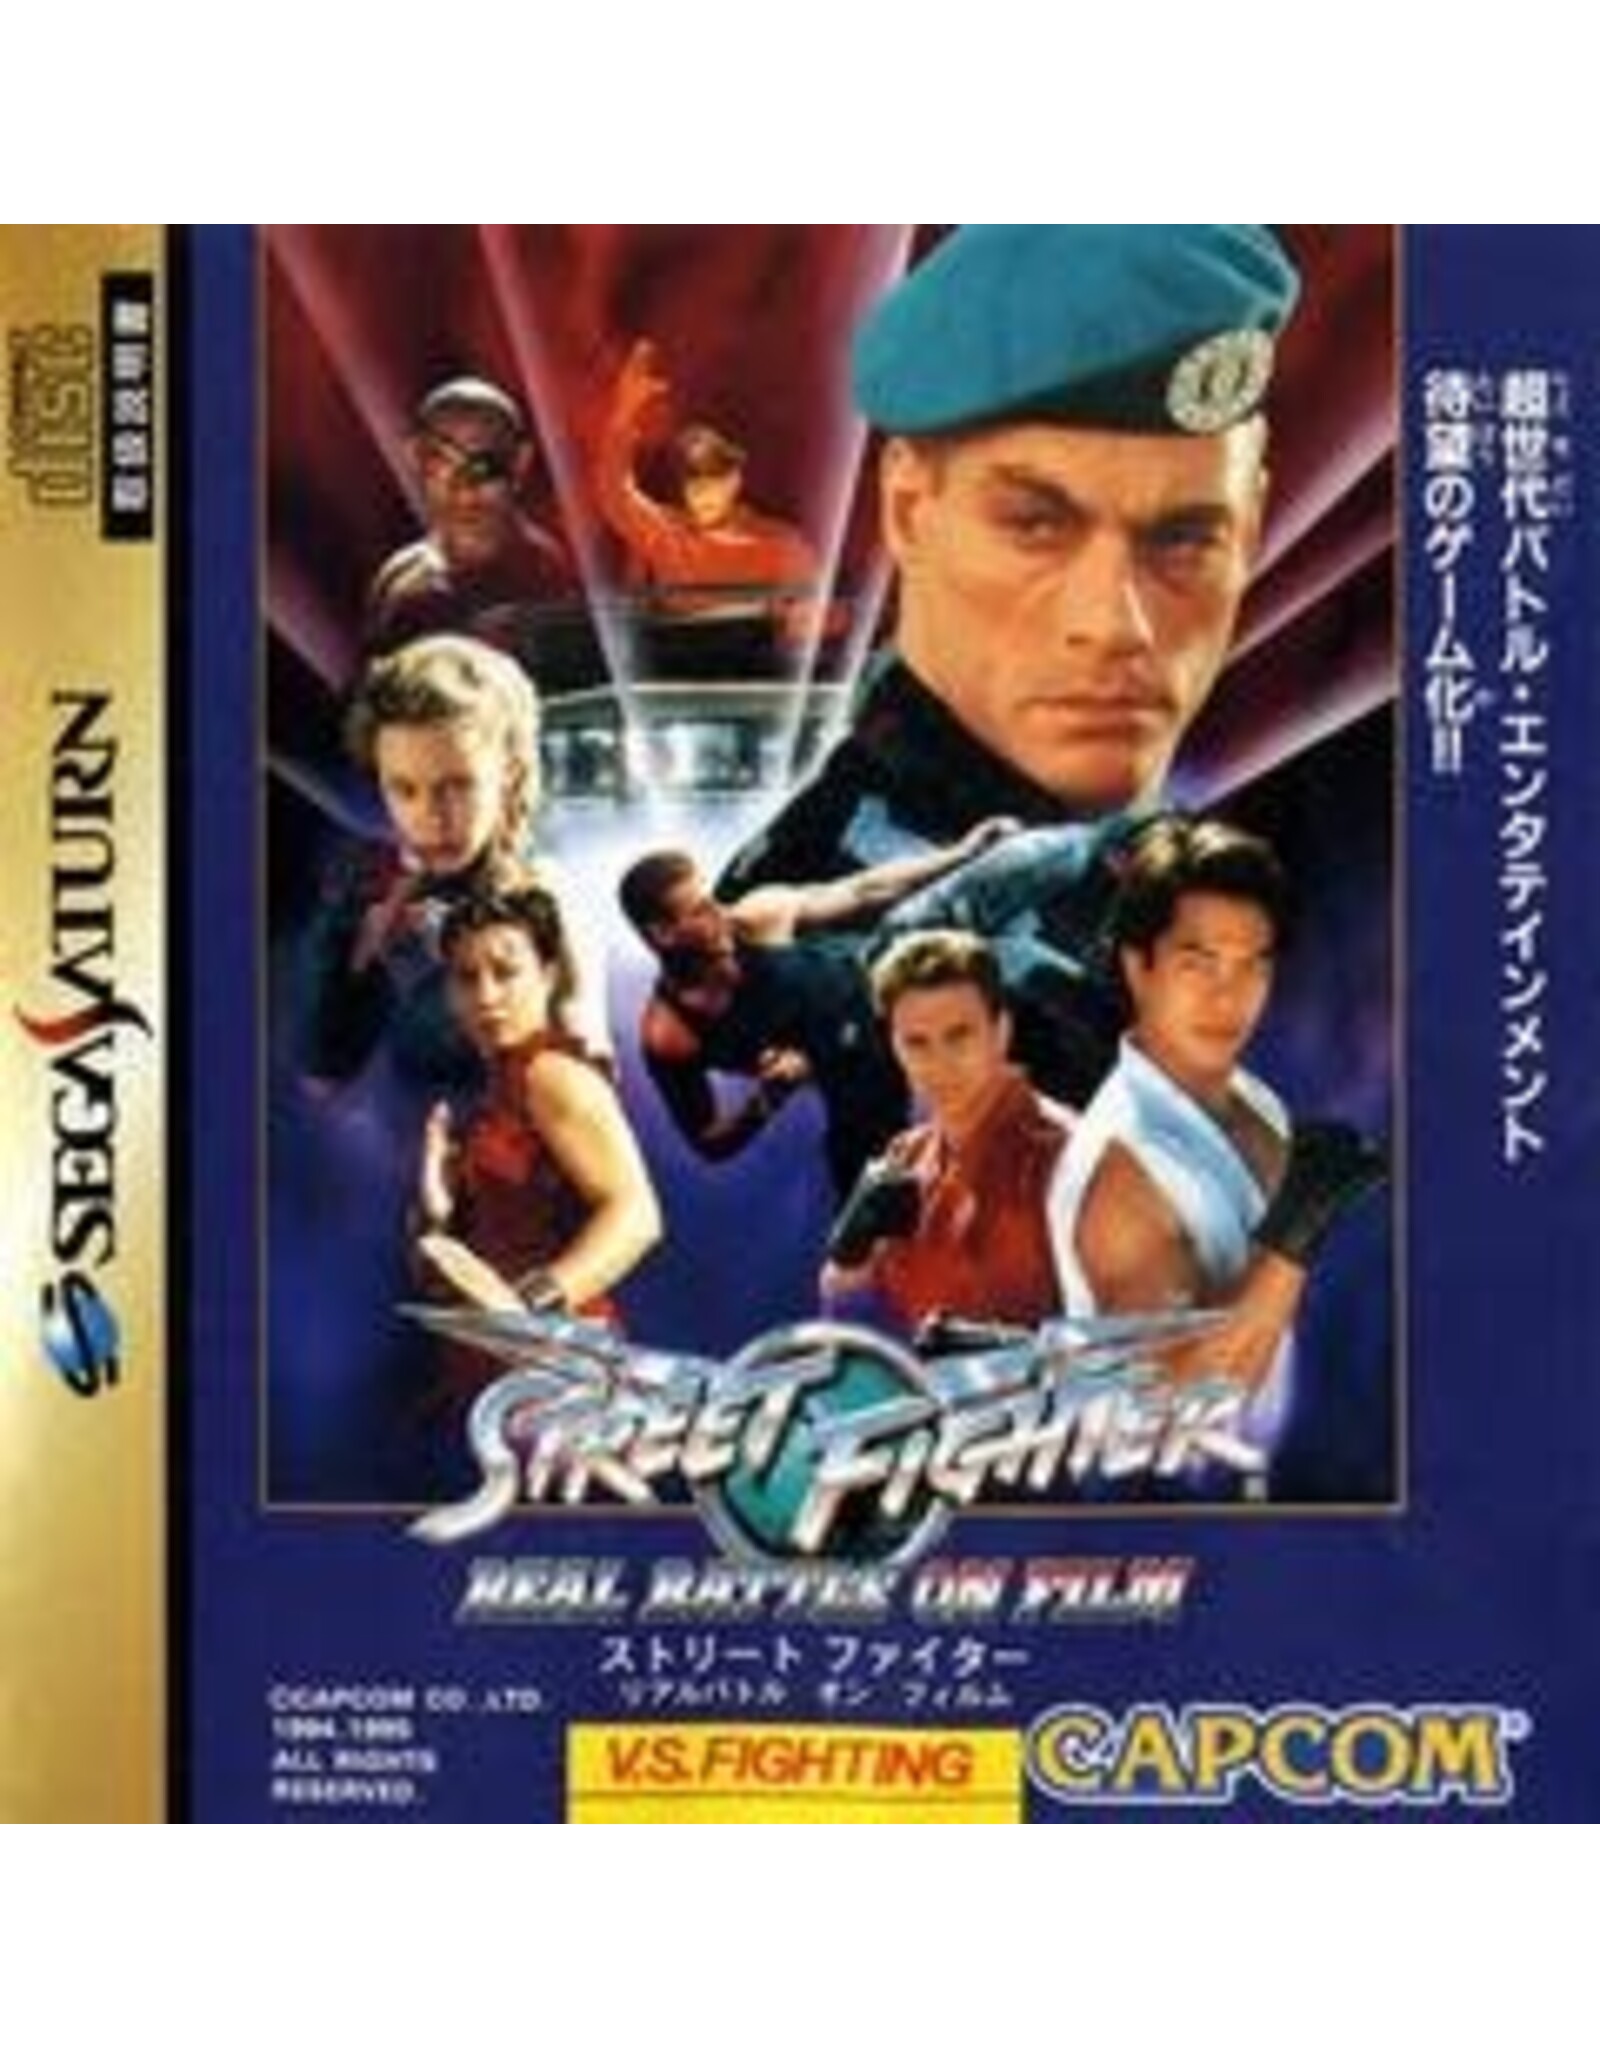 Sega Saturn Street Fighter: Real Battle on Film - JP Import (Used)